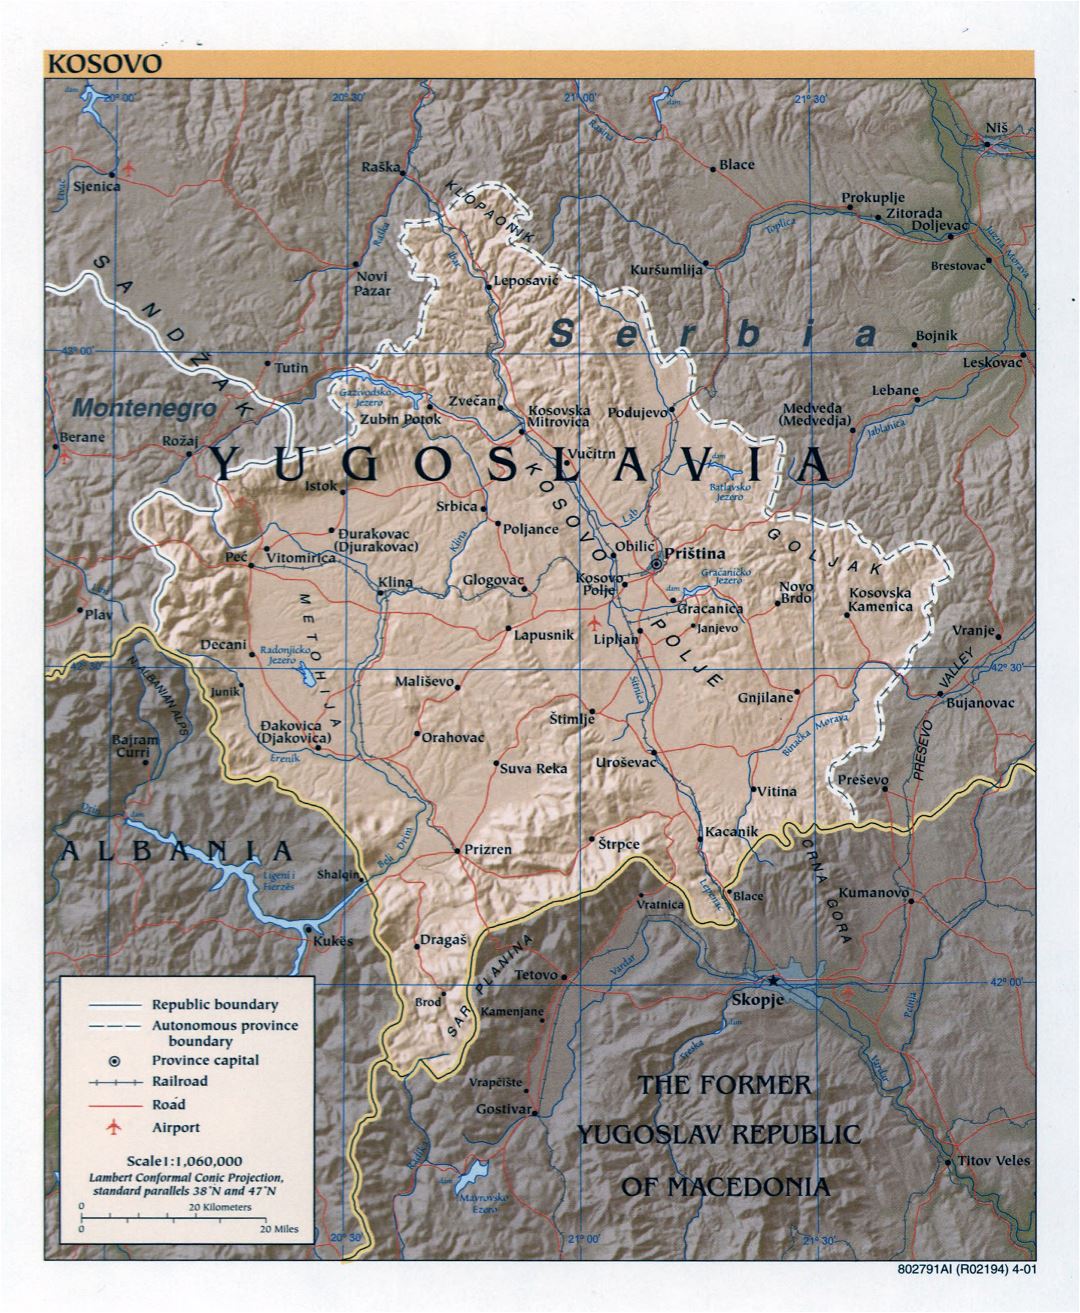 Grande detallada mapa política de Kosovo con alivio, carreteras, ferrocarriles, aeropuertos y las principales ciudades - 2001